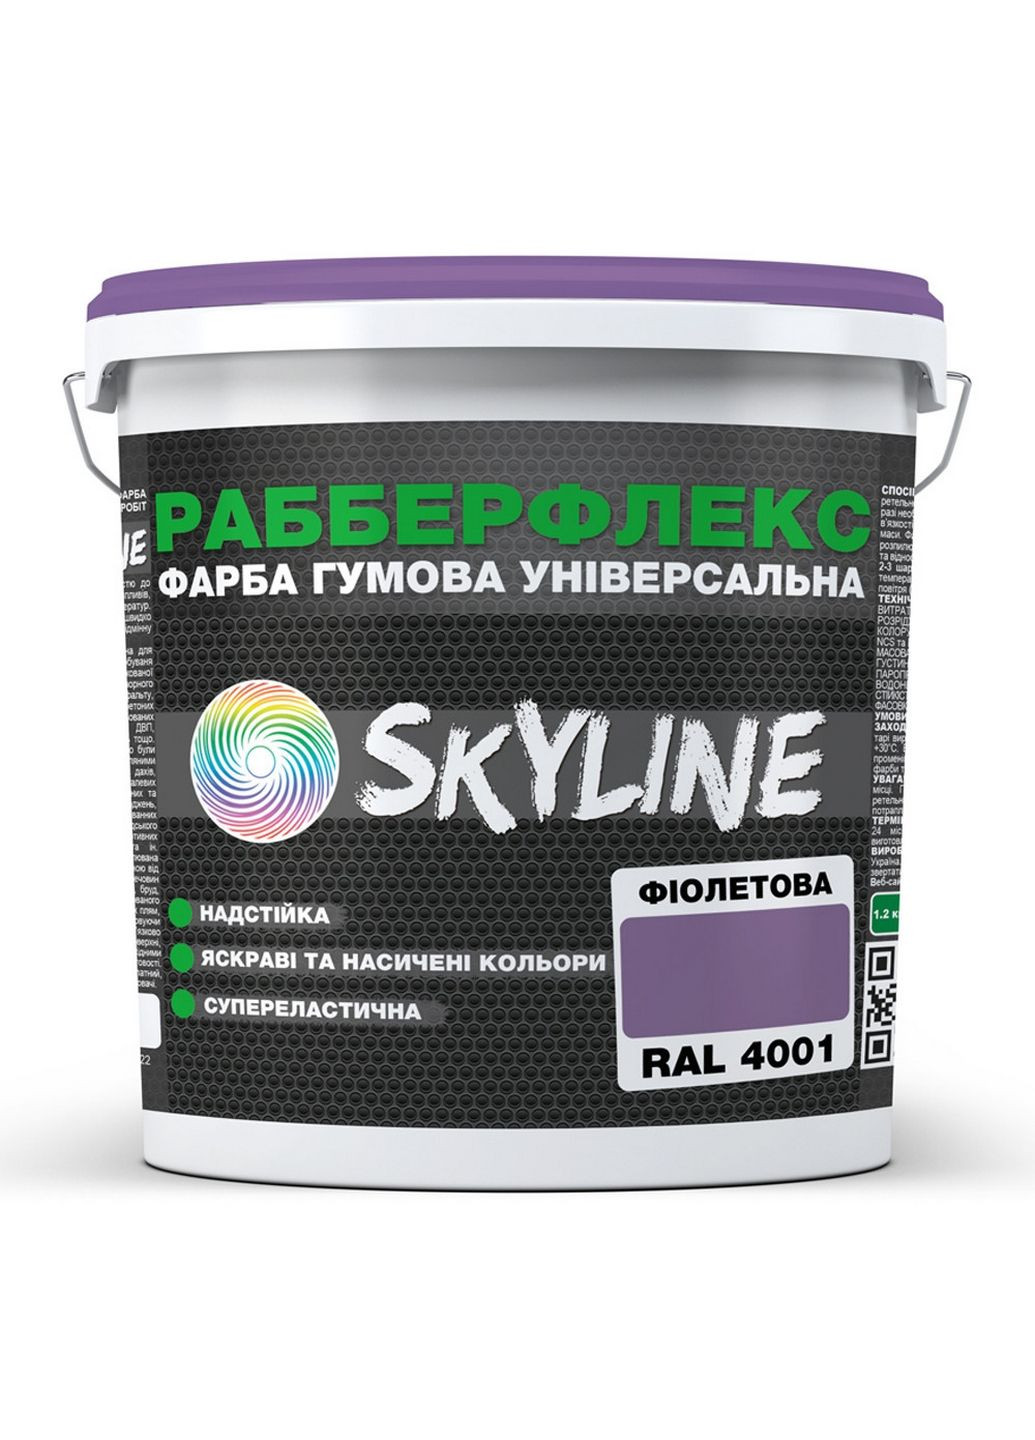 Краска резиновая суперэластичная сверхустойчивая «РабберФлекс» Фиолетовая RAL 4001 12 кг SkyLine (283327829)